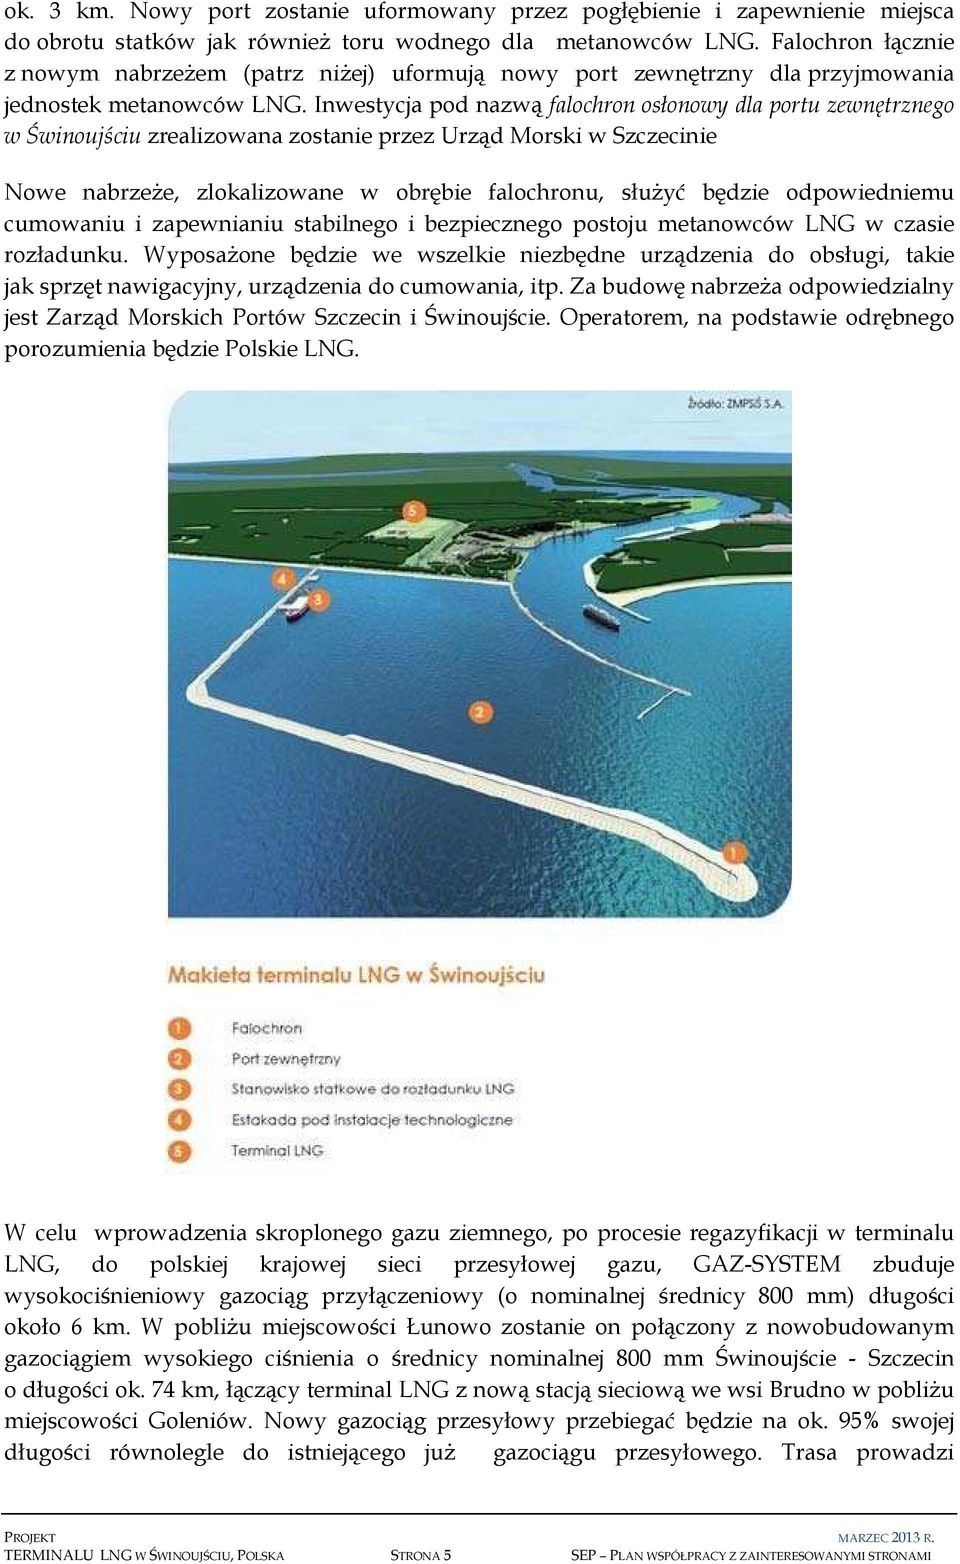 Inwestycja pod nazwą falochron osłonowy dla portu zewnętrznego w Świnoujściu zrealizowana zostanie przez Urząd Morski w Szczecinie Nowe nabrzeże, zlokalizowane w obrębie falochronu, służyć będzie